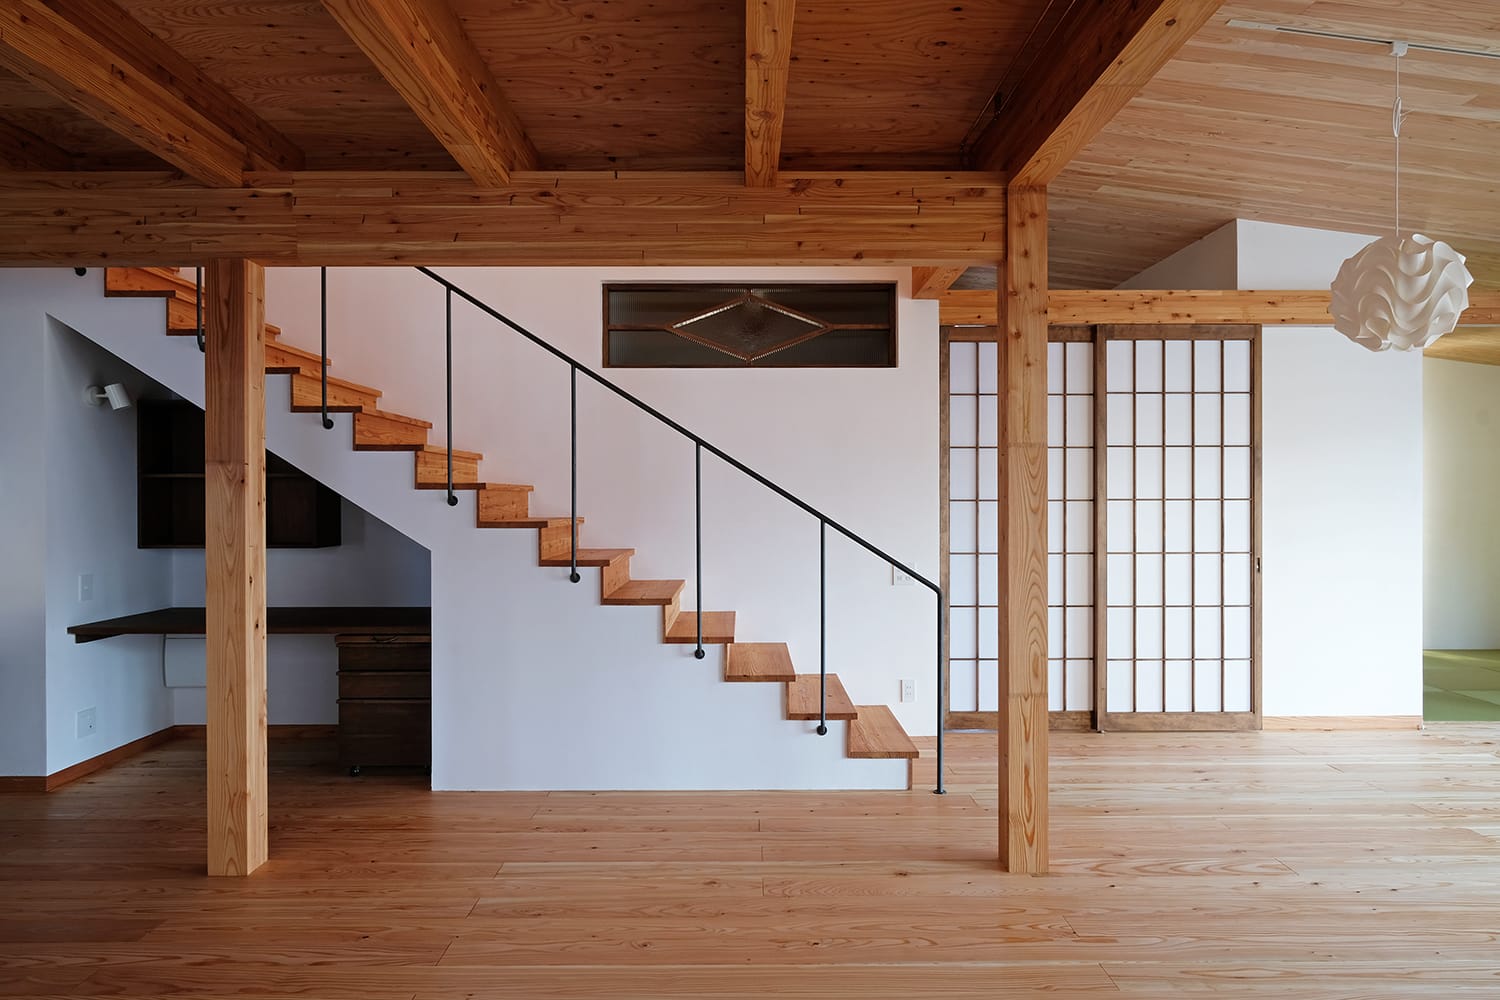 北海道産カラマツの柱と梁組み渡り顎掛け仕口 カラマツ無垢材の天井板と床板張りに漆喰塗りの壁